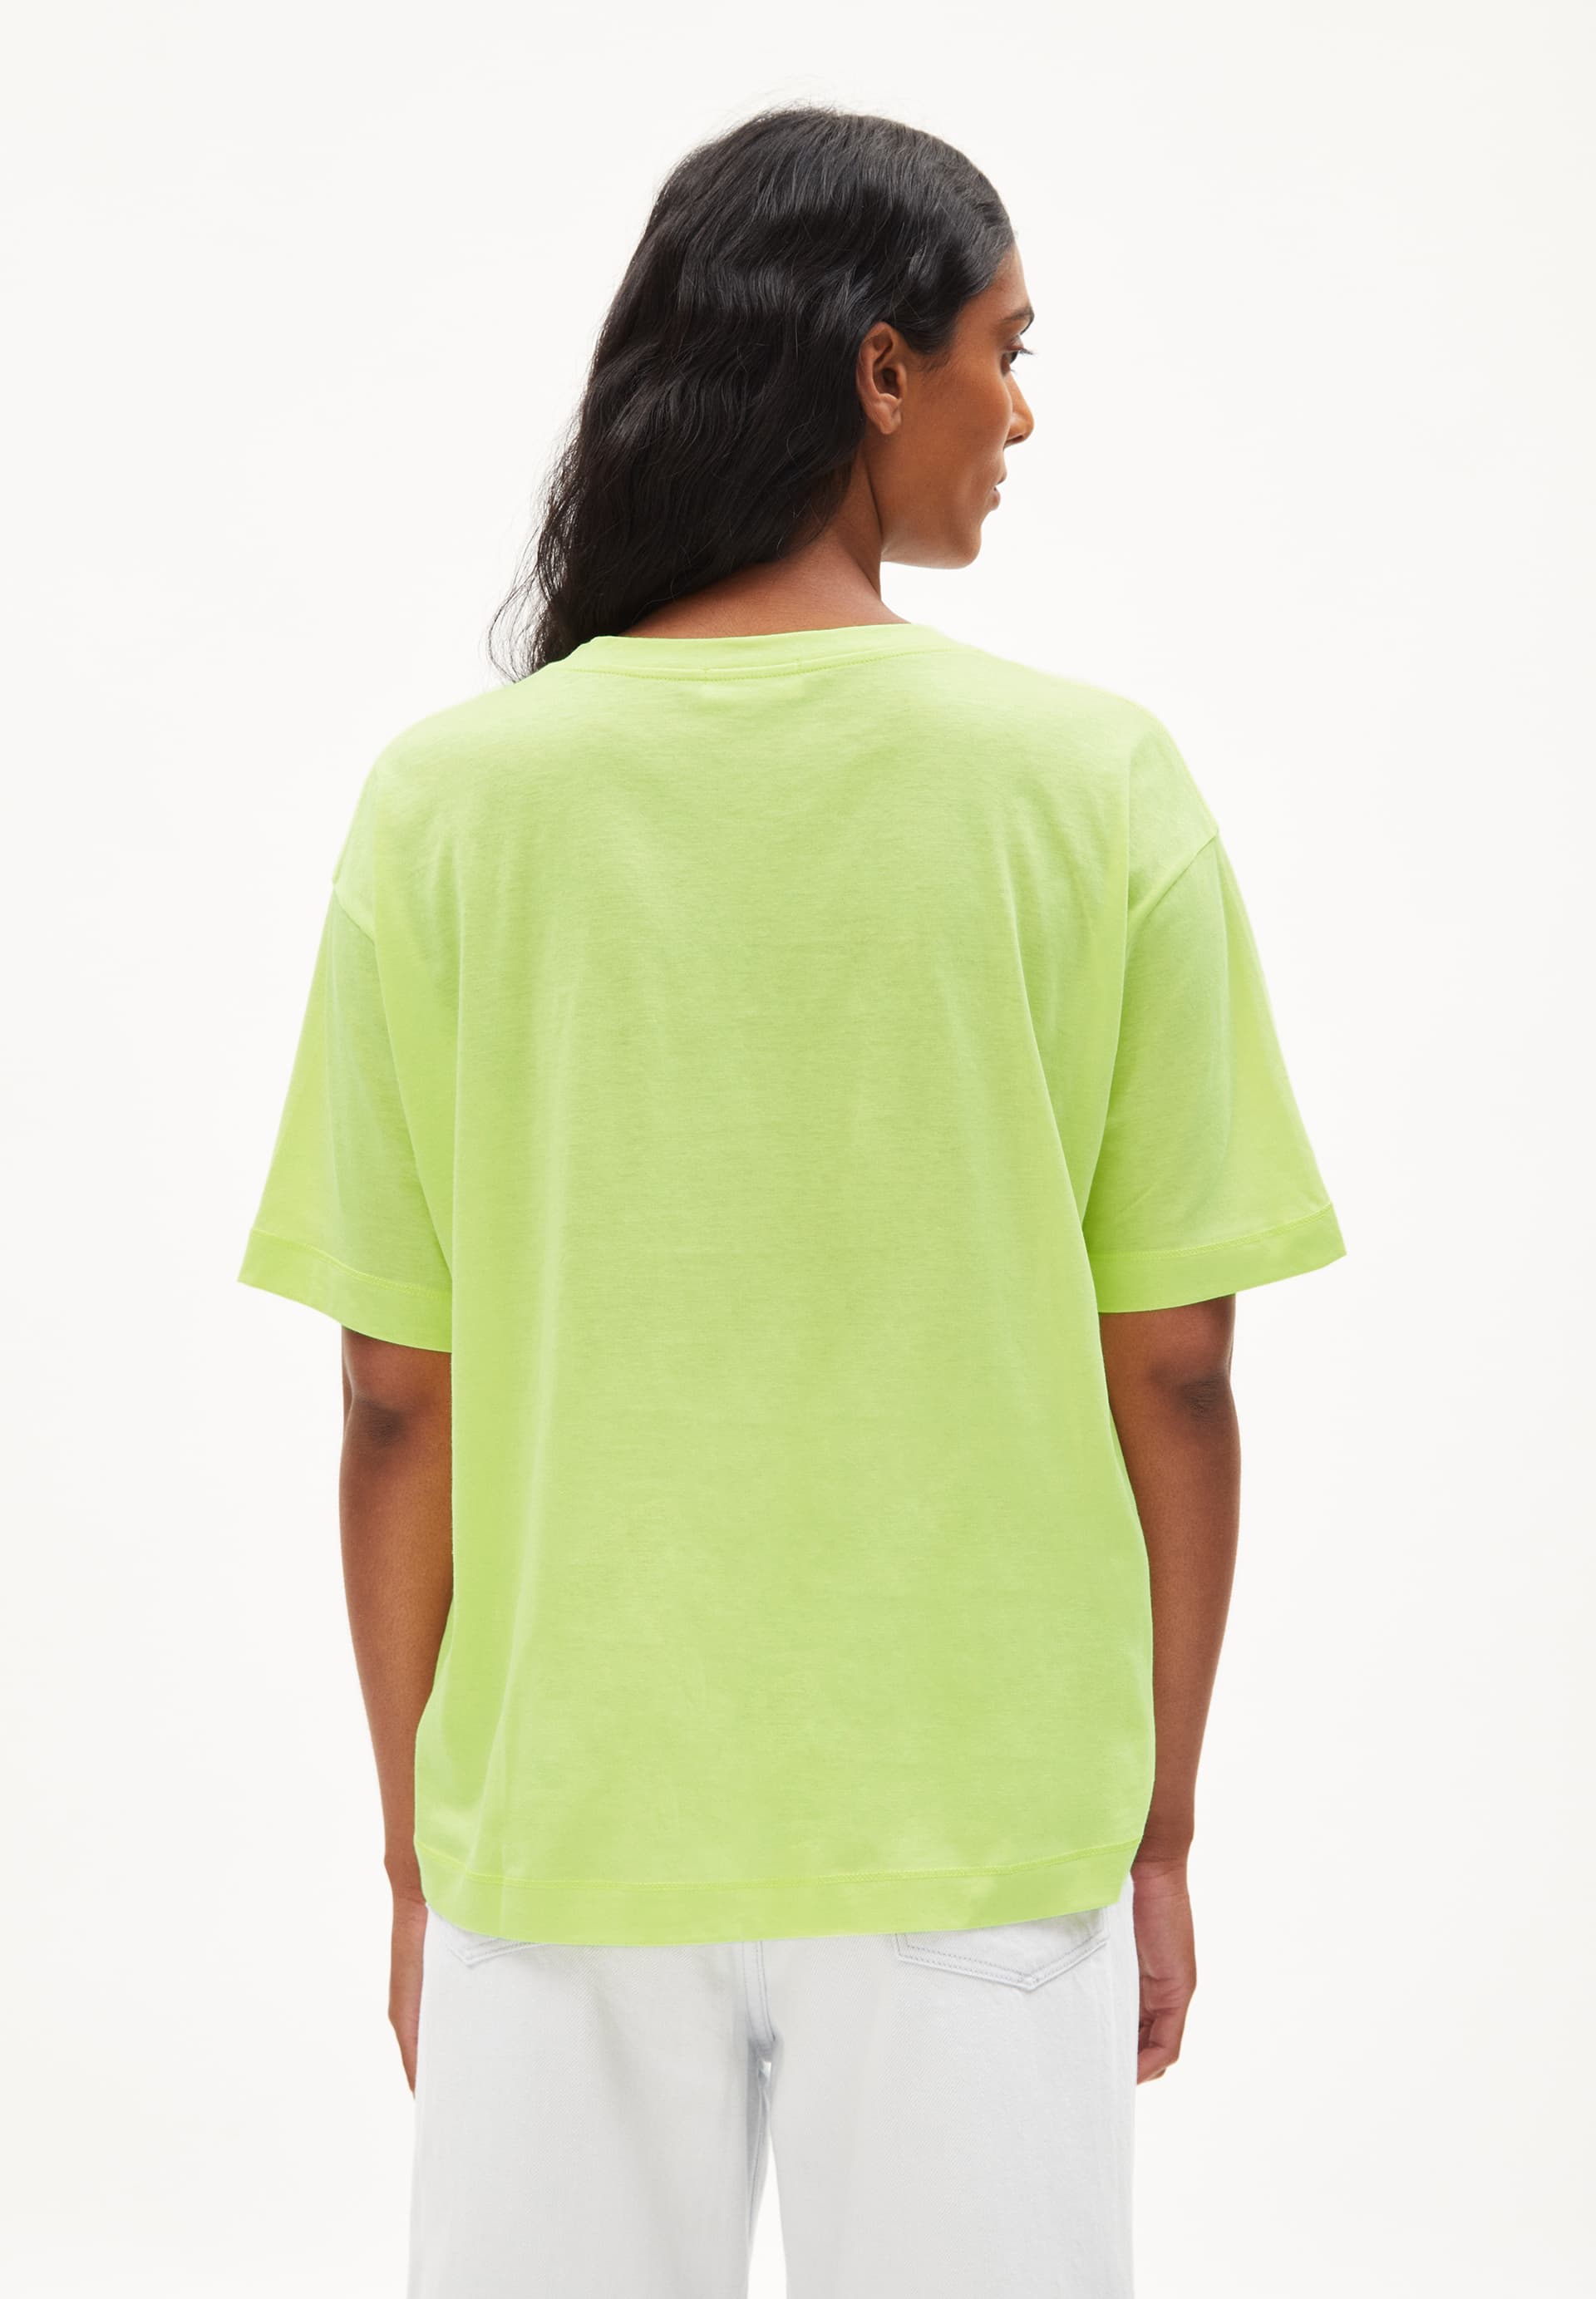 DEMIKAA T-shirt met oversized fit van biologisch katoen